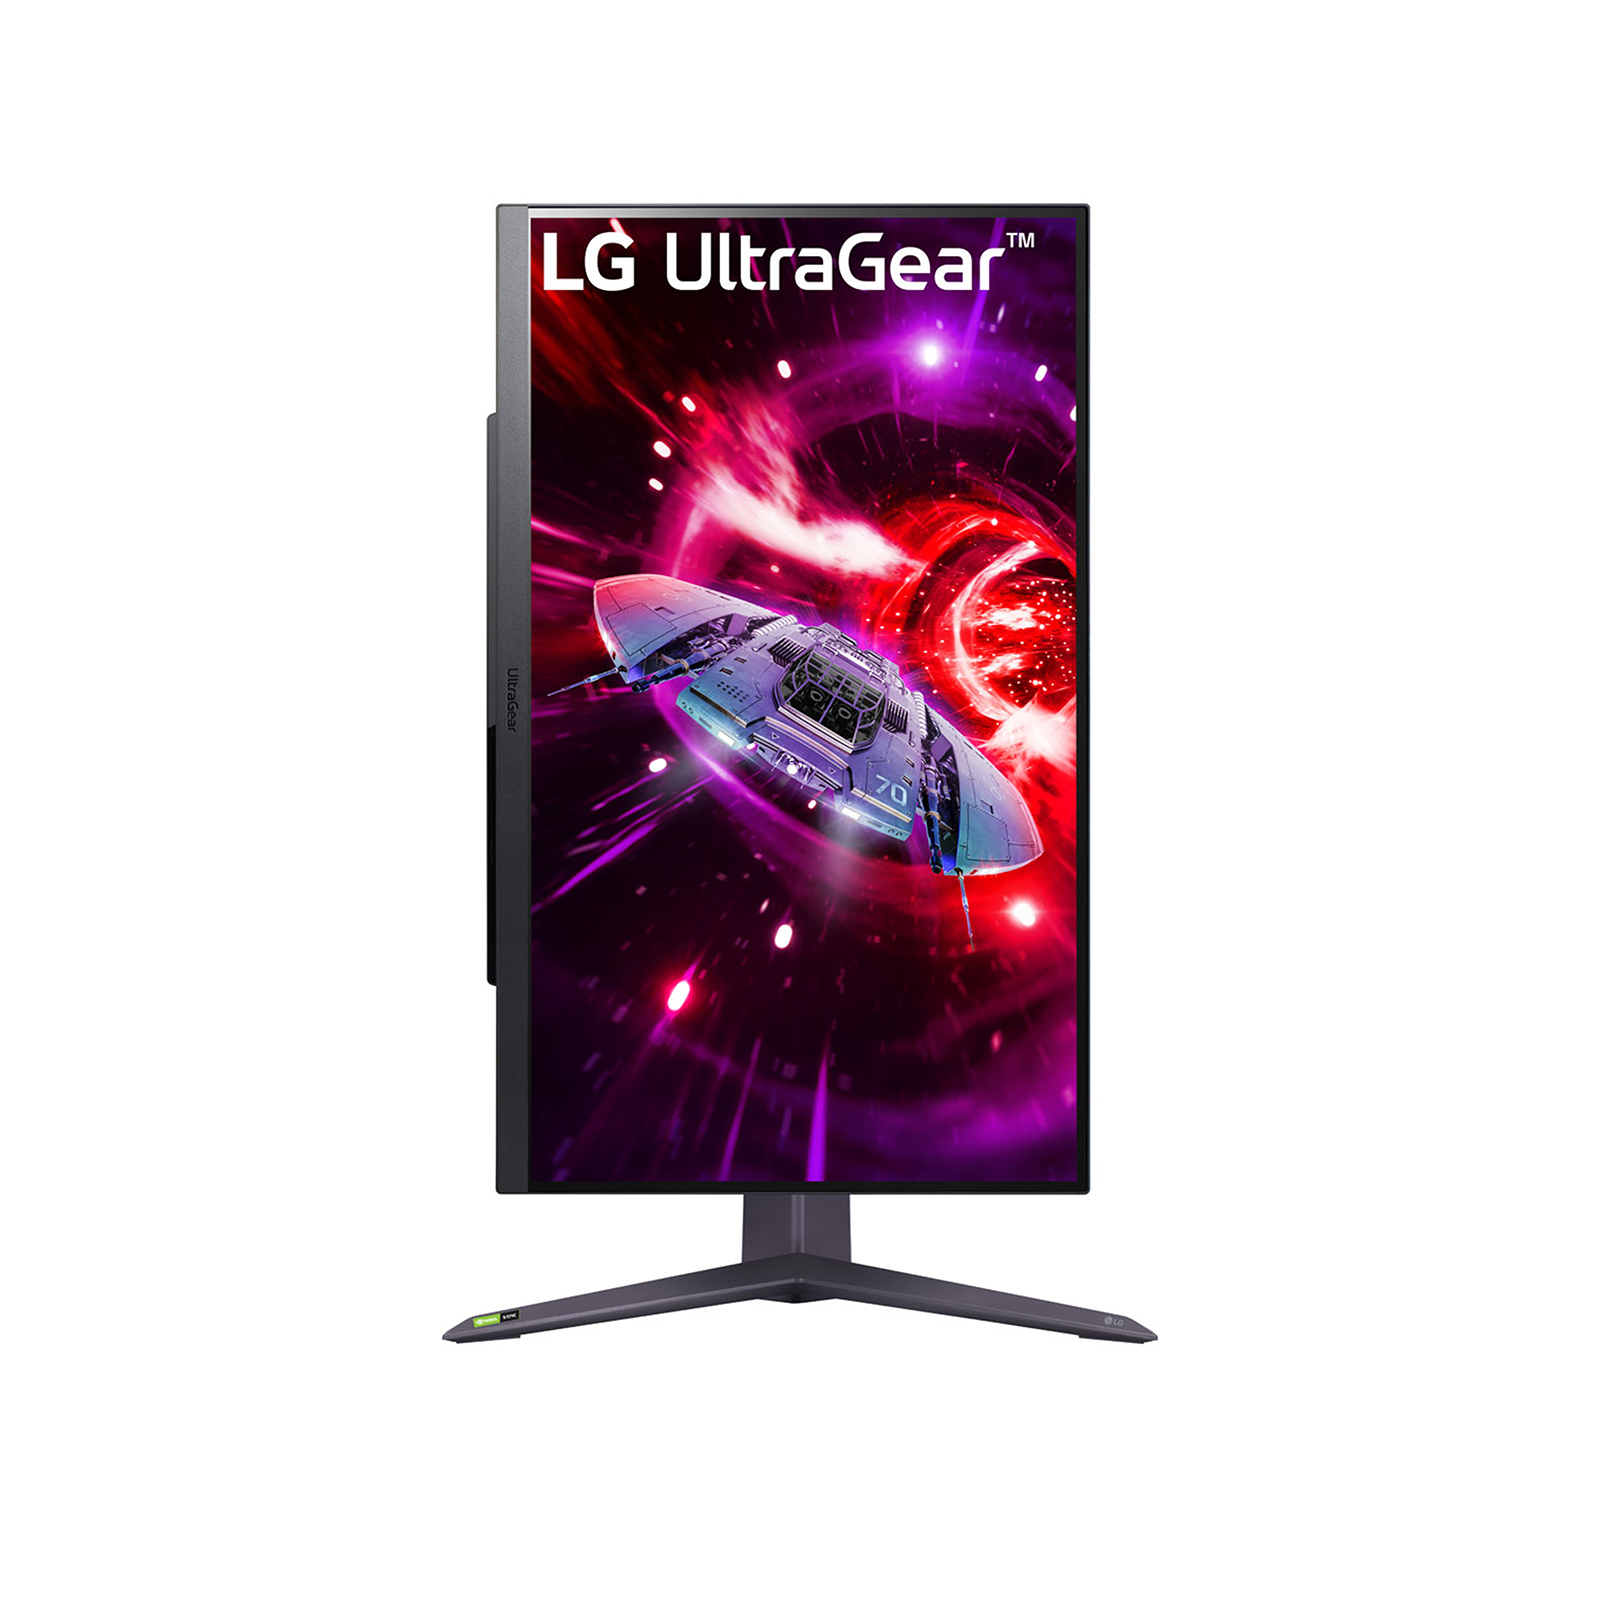 LG UltraGear 27GR75Q-B